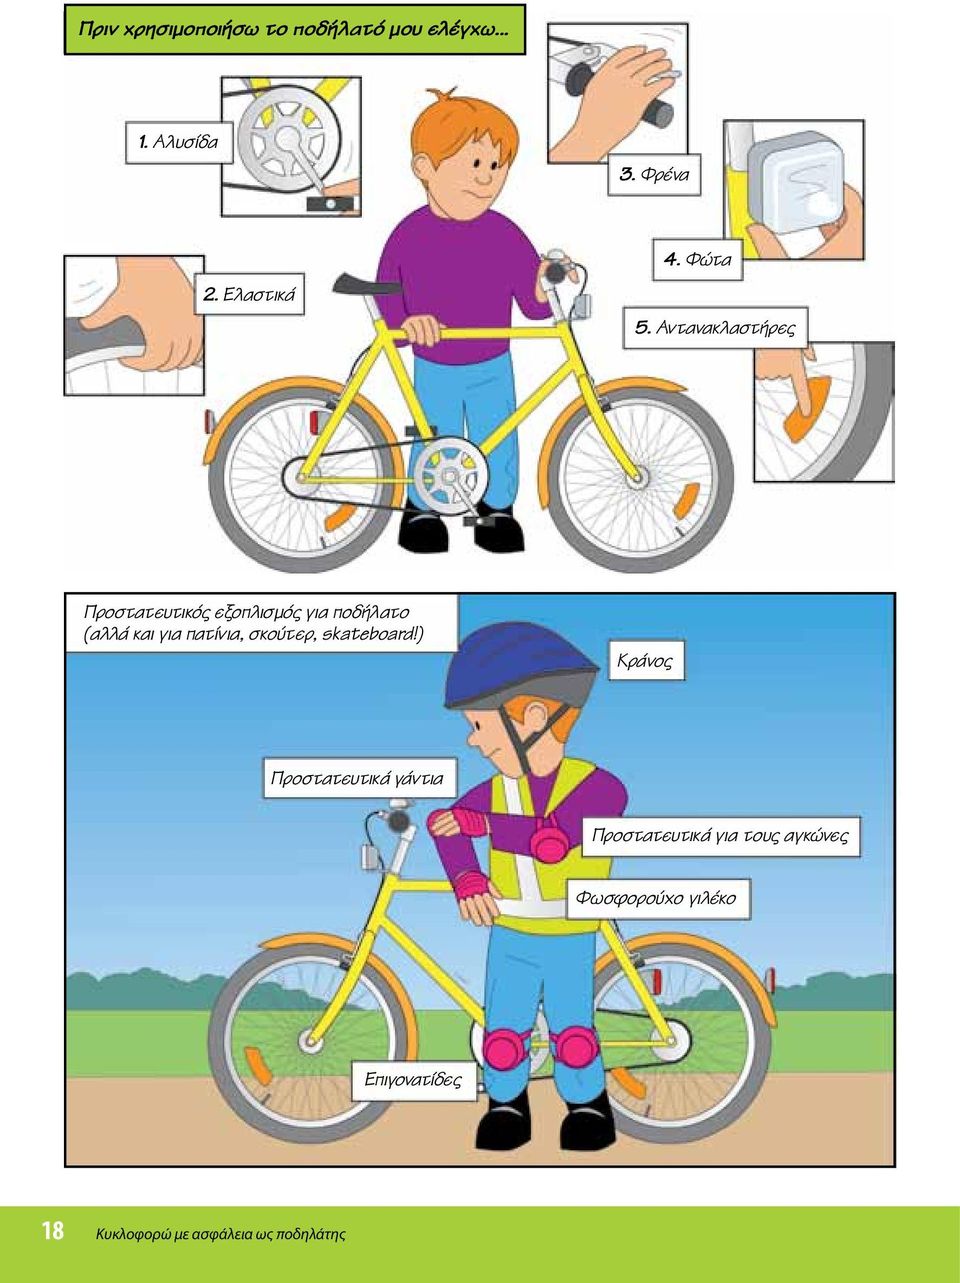 Αντανακλαστήρες Προστατευτικός εξοπλισμός για ποδήλατο (αλλά και για πατίνια,